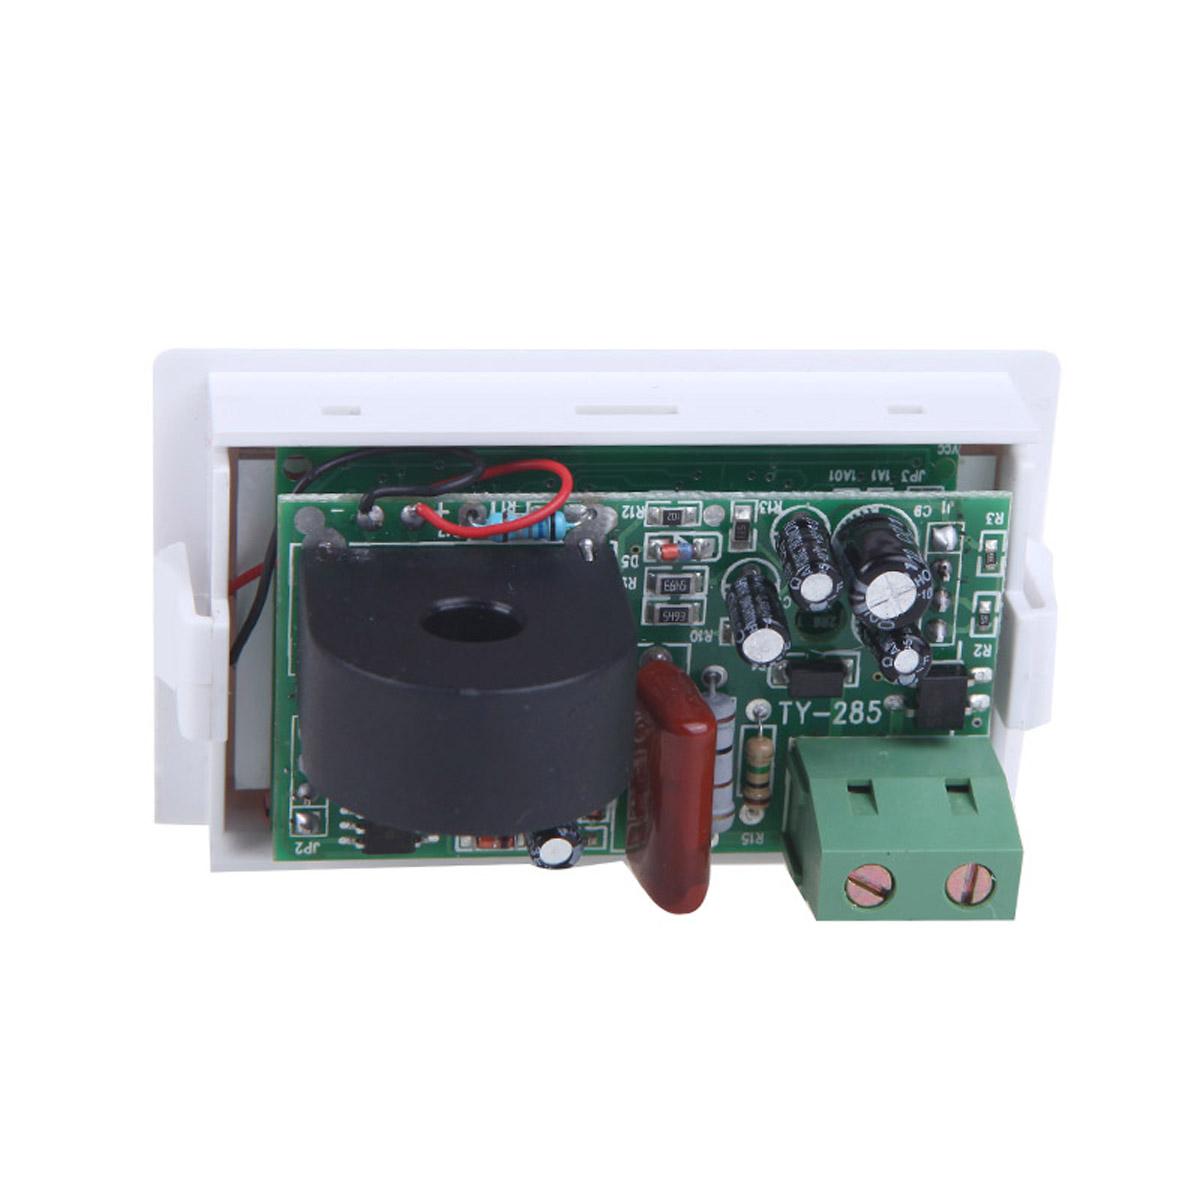 D85-2041-LCD-Display-Digital-AC100-300V-50A-Ammeter-Voltmeter-Meter-Tester-Amp-Panel-Meter-With-Blue-1443865-5